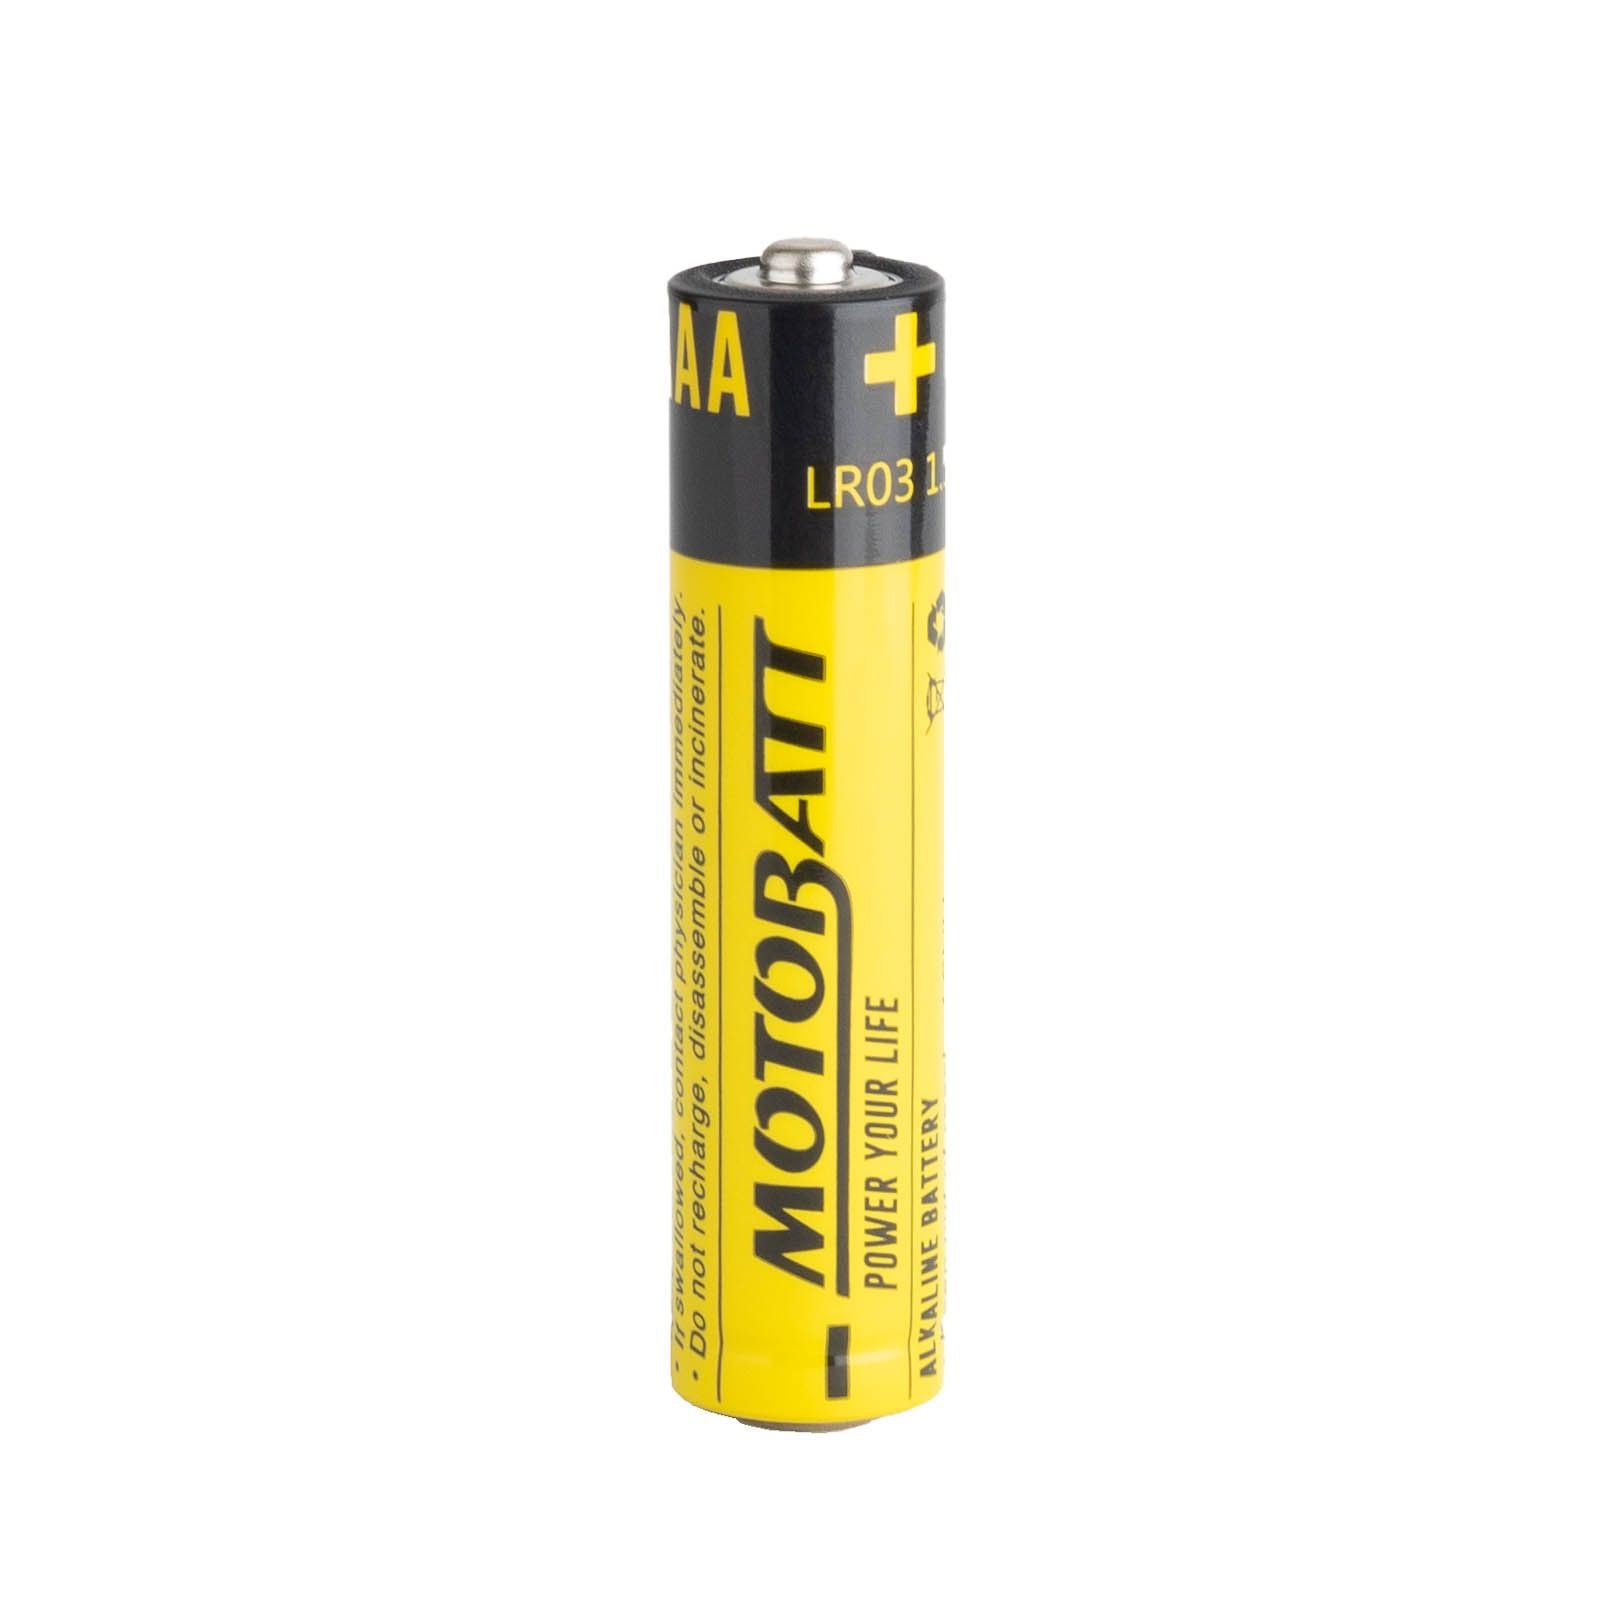 New MOTOBATT AAA LR03 1.5 Alkaline Household Battery 4/Card #MCBAAA